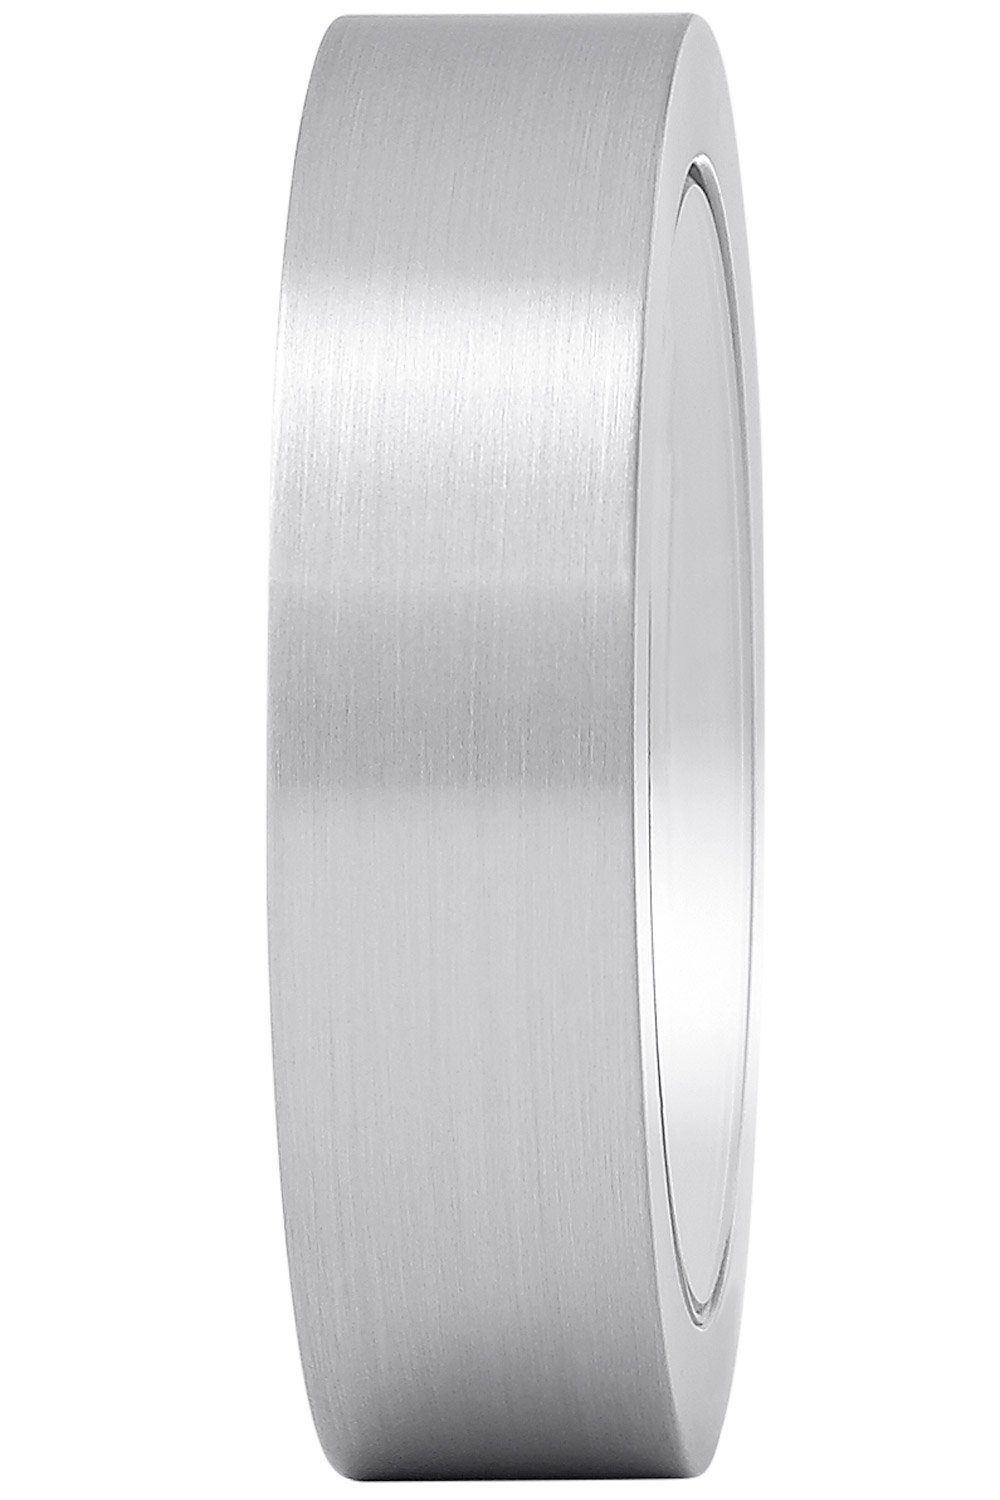 Tischuhr Silberfarben Magnet- MONDAINE